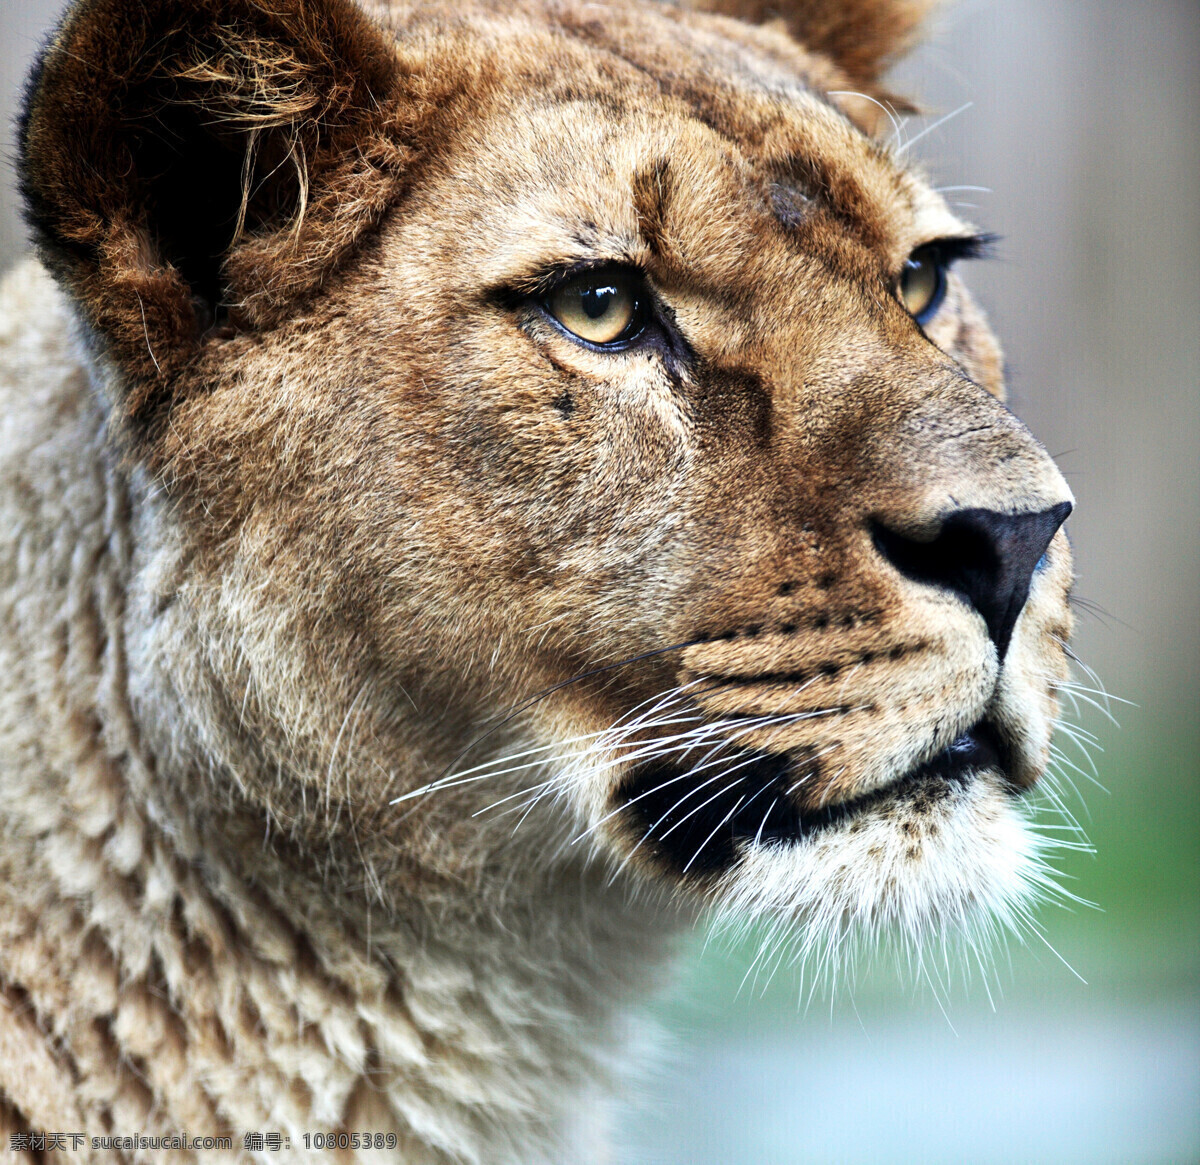 雌狮头部高清 狮子 凶猛 威猛 雌狮 头部 哺乳动物 犬科动物 动物世界 生物 摄影图 高清图片 陆地动物 生物世界 黑色